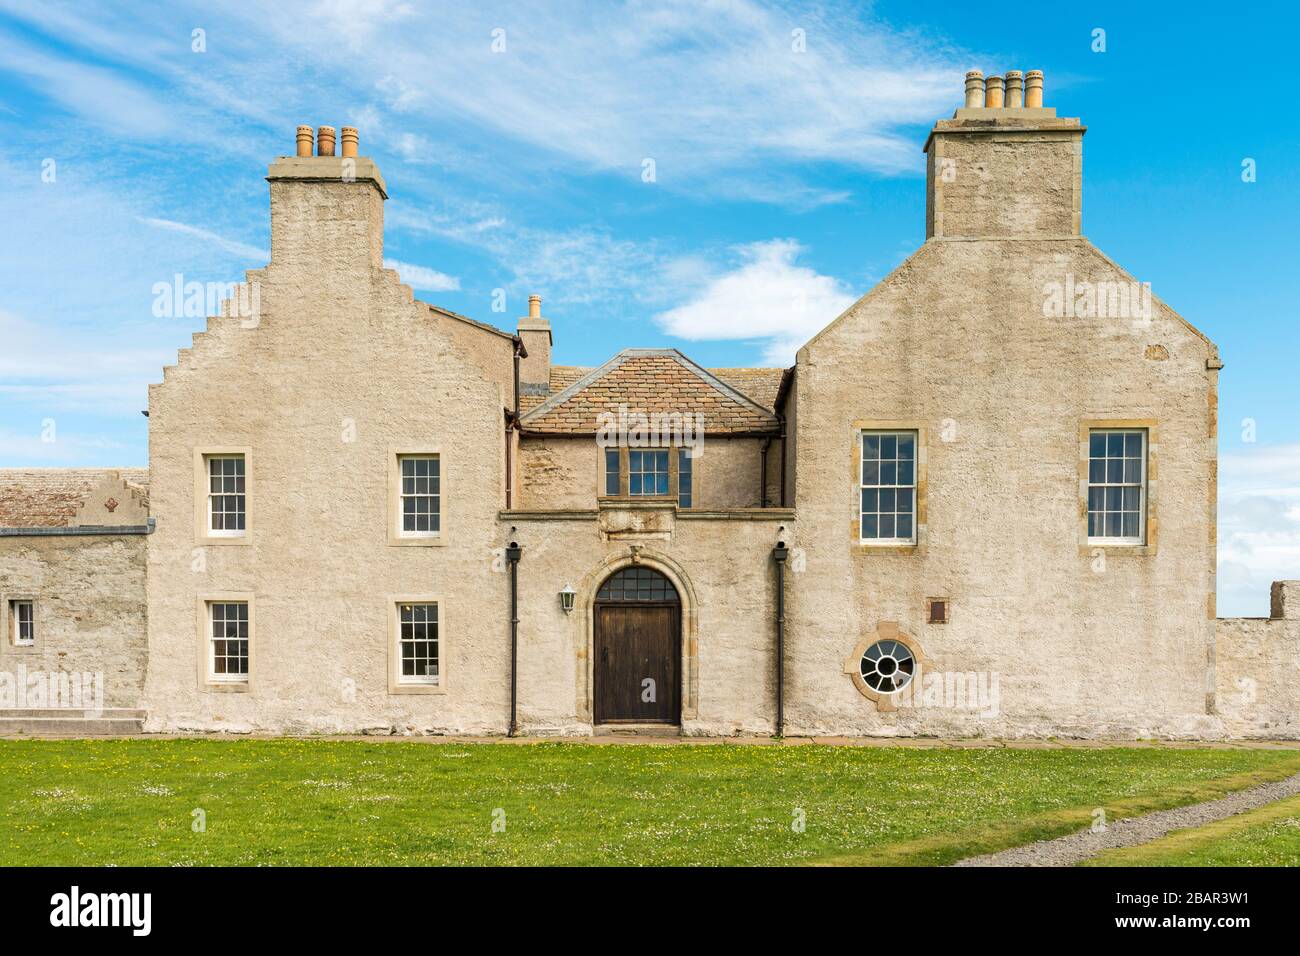 El Skaill House es una antigua casa señorial histórica situada en Mainland, Orkney, cerca del asentamiento neolítico de Skara Brae. Escocia, Reino Unido. Foto de stock